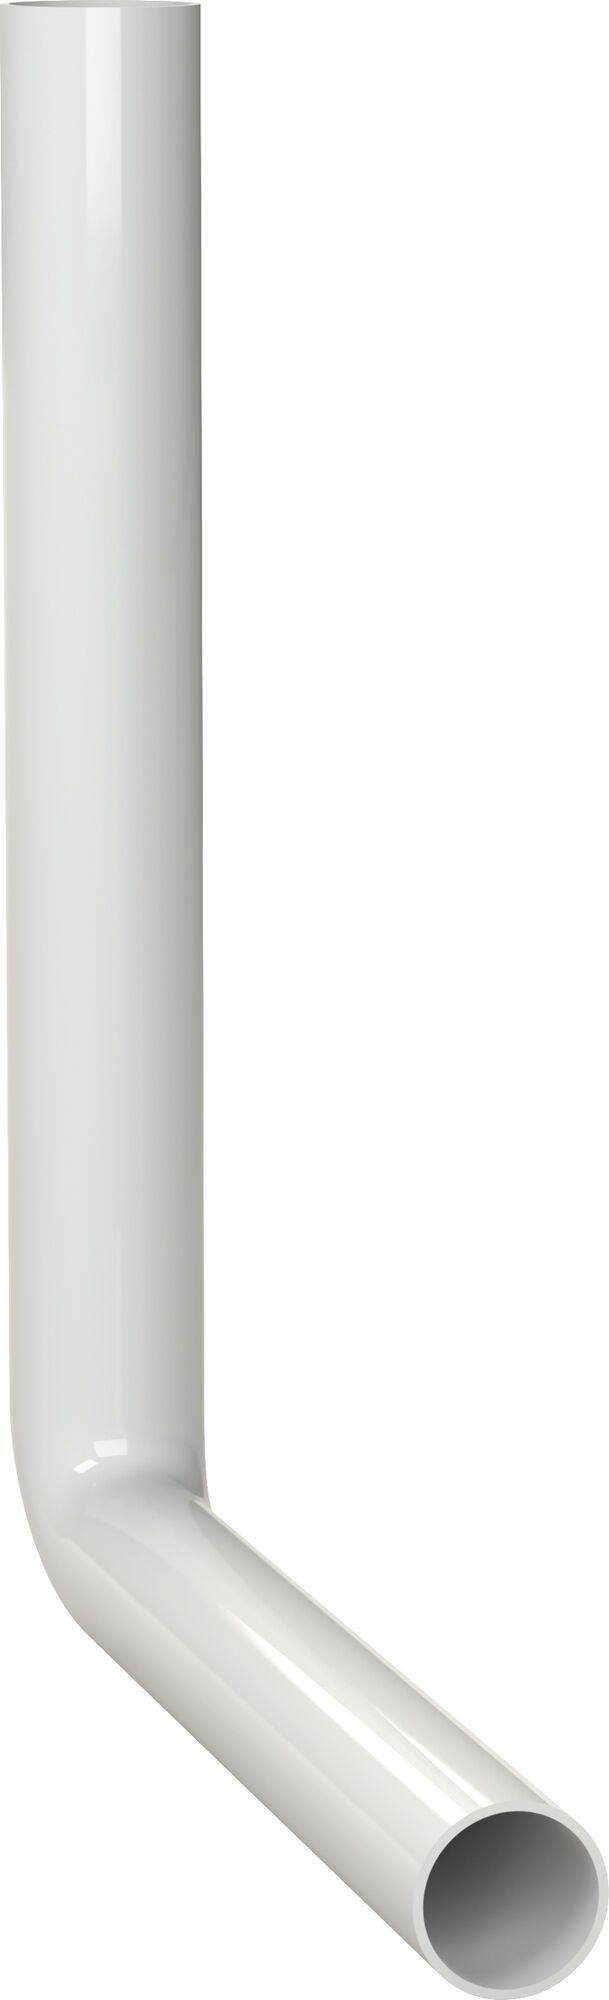 Flush pipe elbow 390 x 350 mm, white